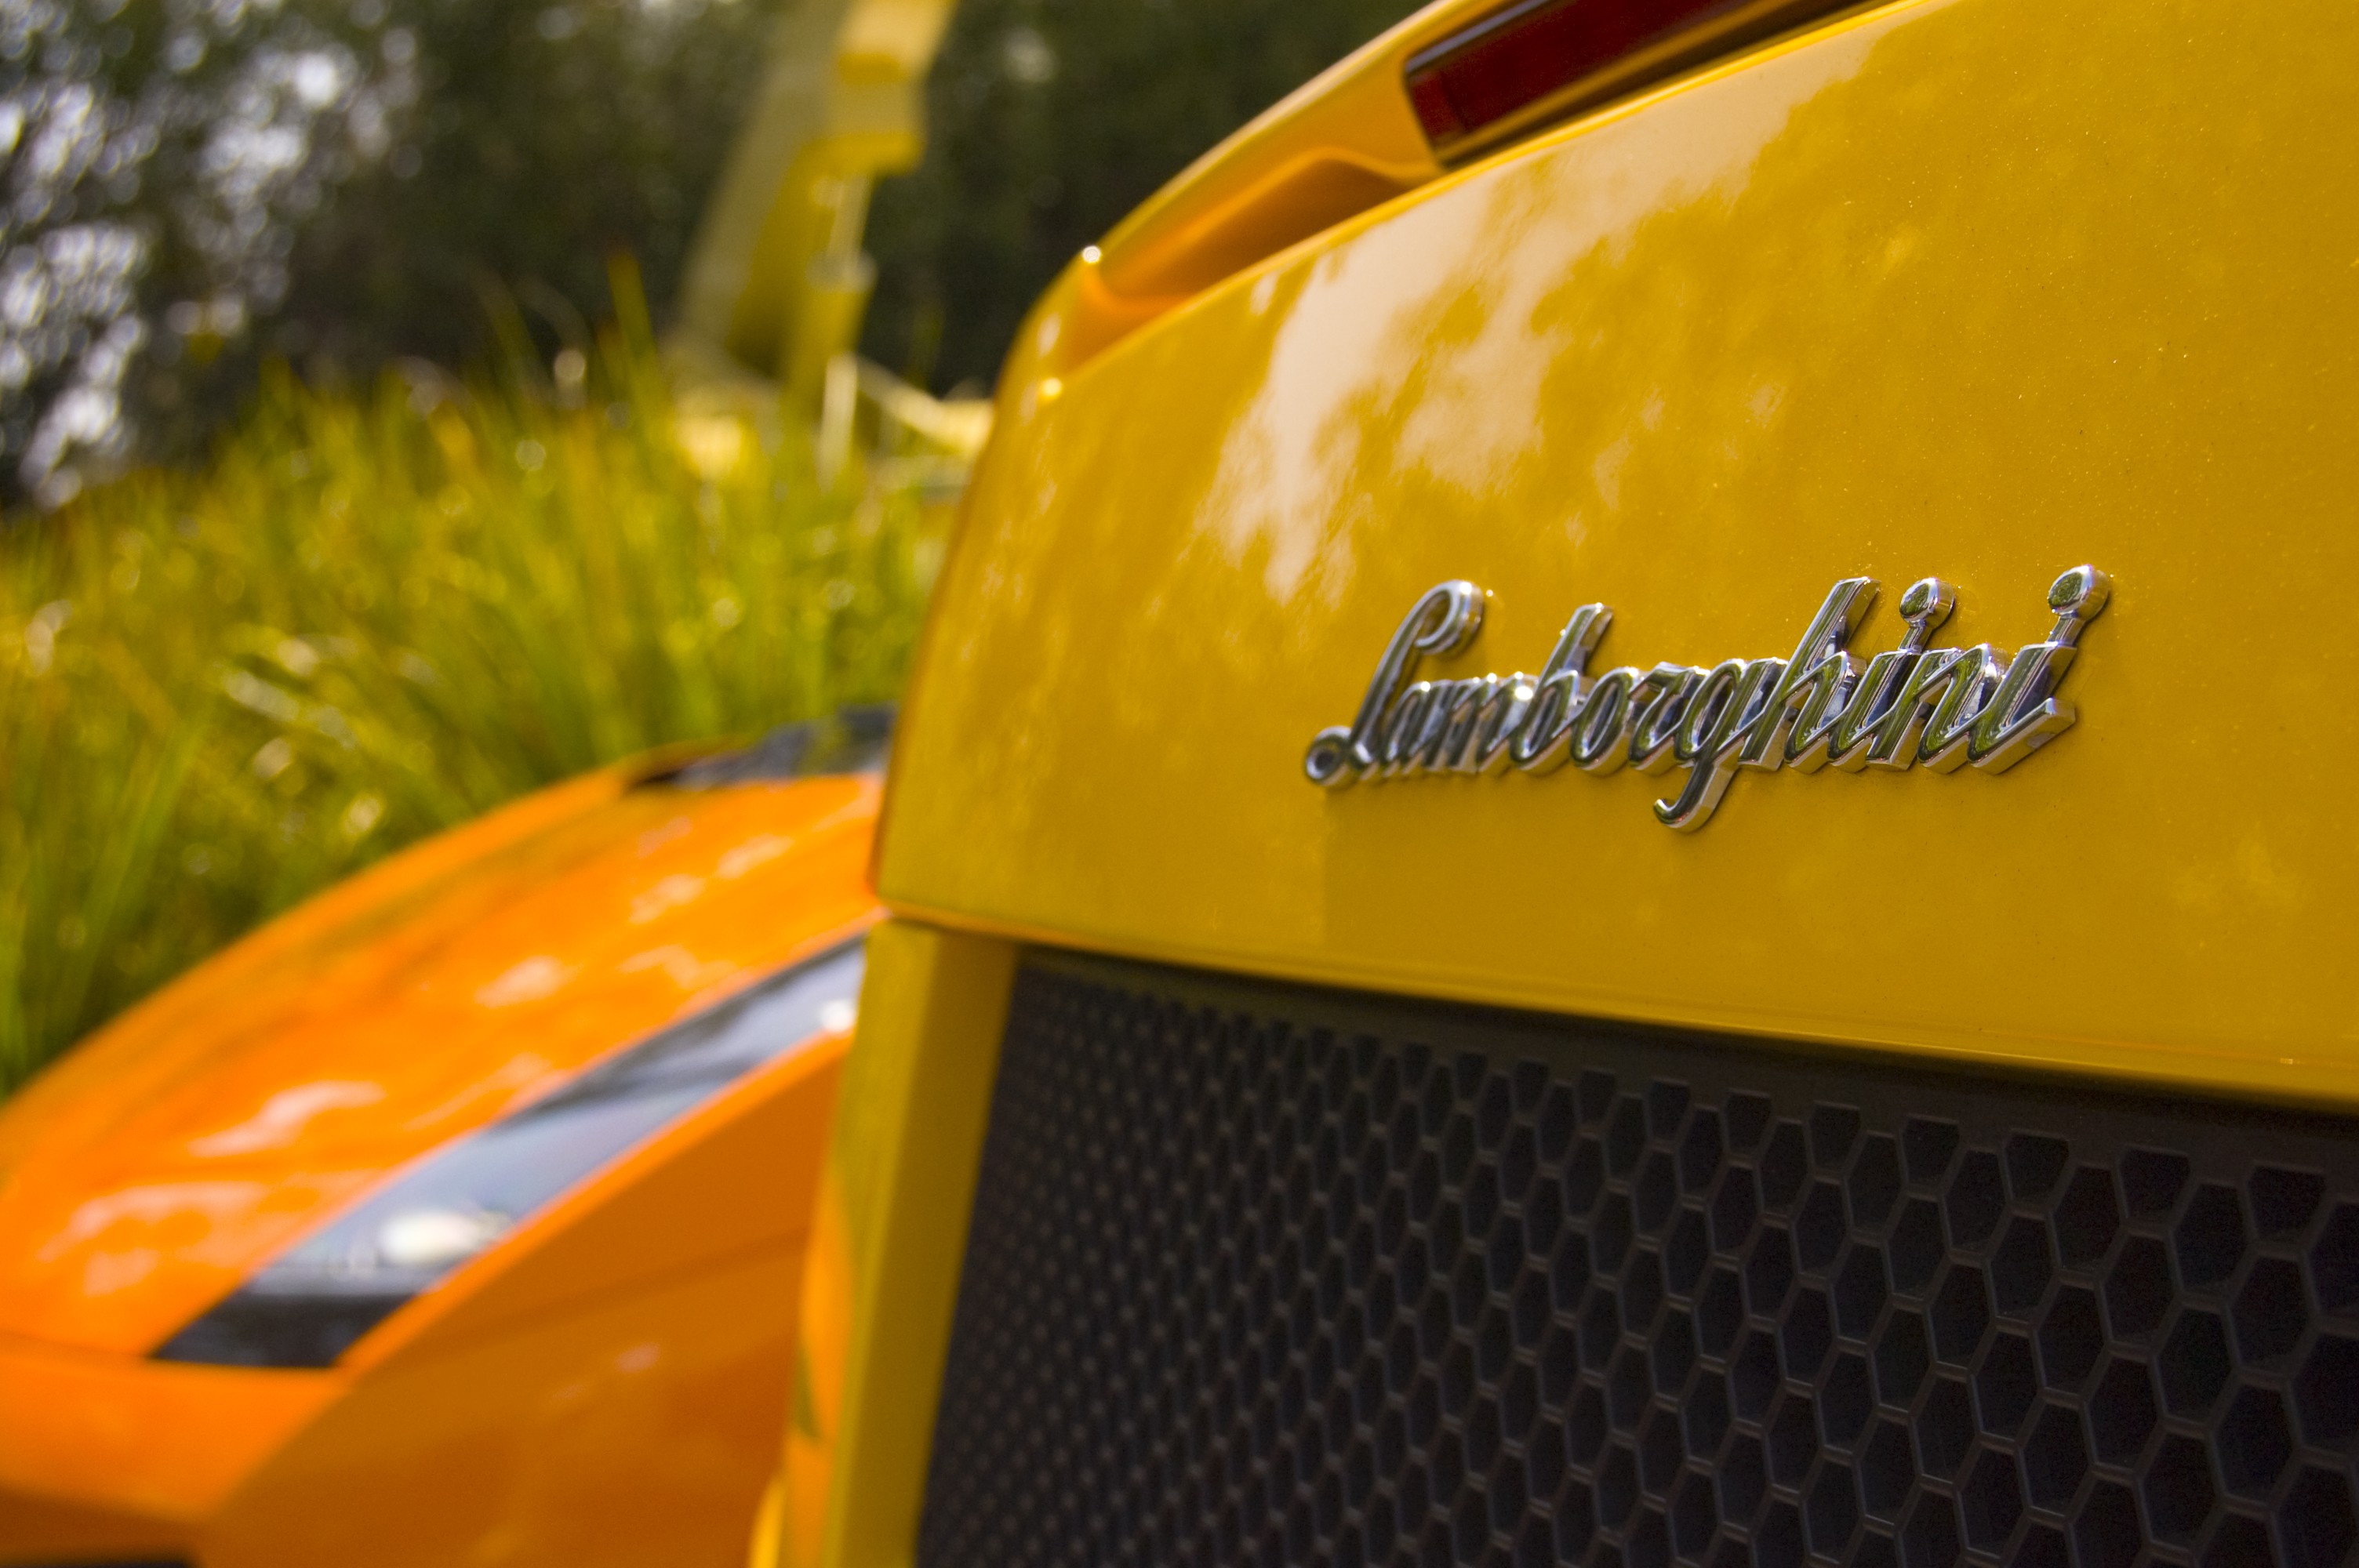 General 3008x2000 car vehicle Lamborghini yellow cars logo Lamborghini Gallardo italian cars Volkswagen Group